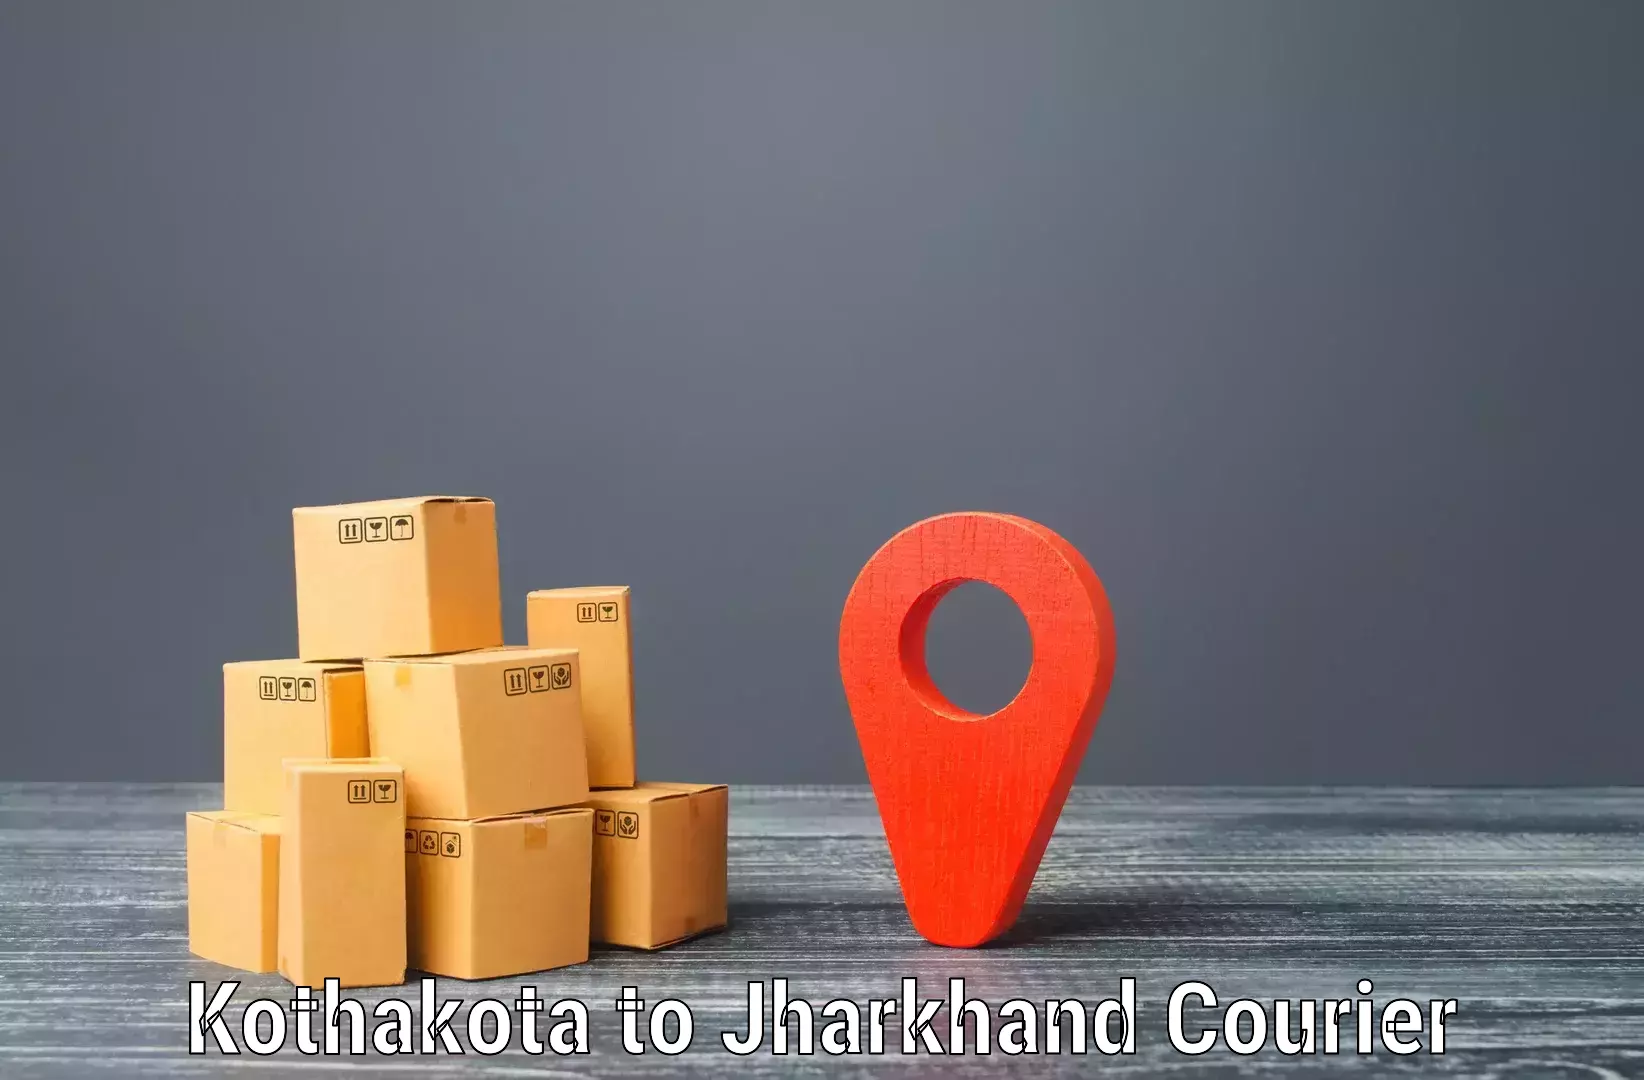 Flexible courier rates Kothakota to Ormanjhi